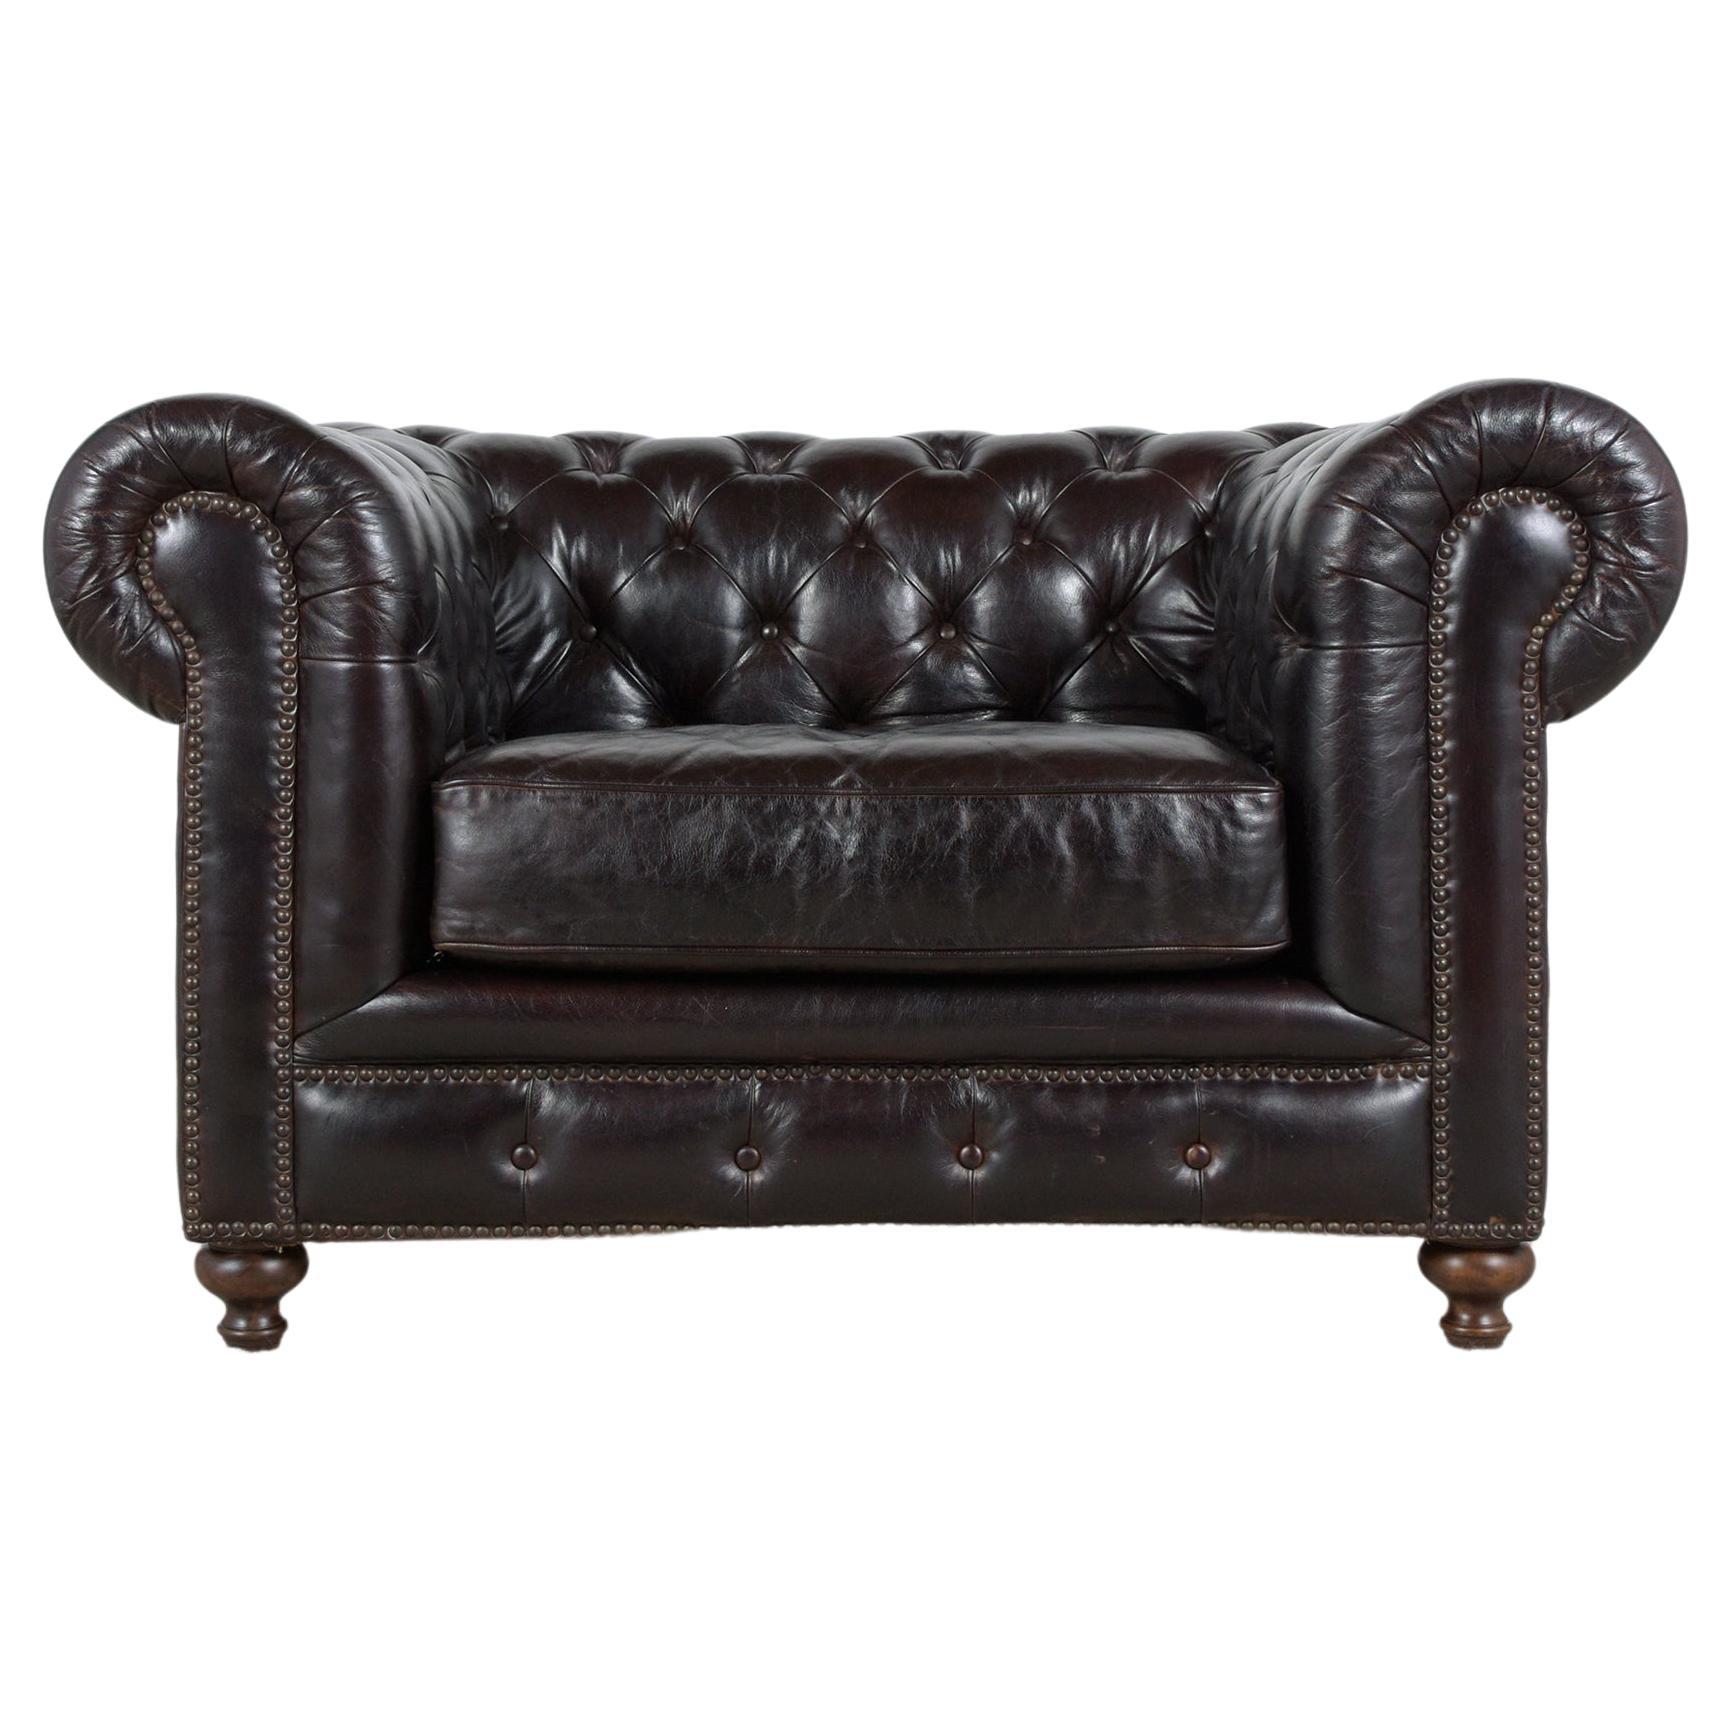 Tauchen Sie ein in die Welt des klassischen Luxus mit unserem Chesterfield-Sessel im Vintage-Stil, einem Möbelstück, das Eleganz und Komfort ausstrahlt. Dieser aus den 1980er Jahren stammende Stuhl wurde von unseren Fachleuten sorgfältig